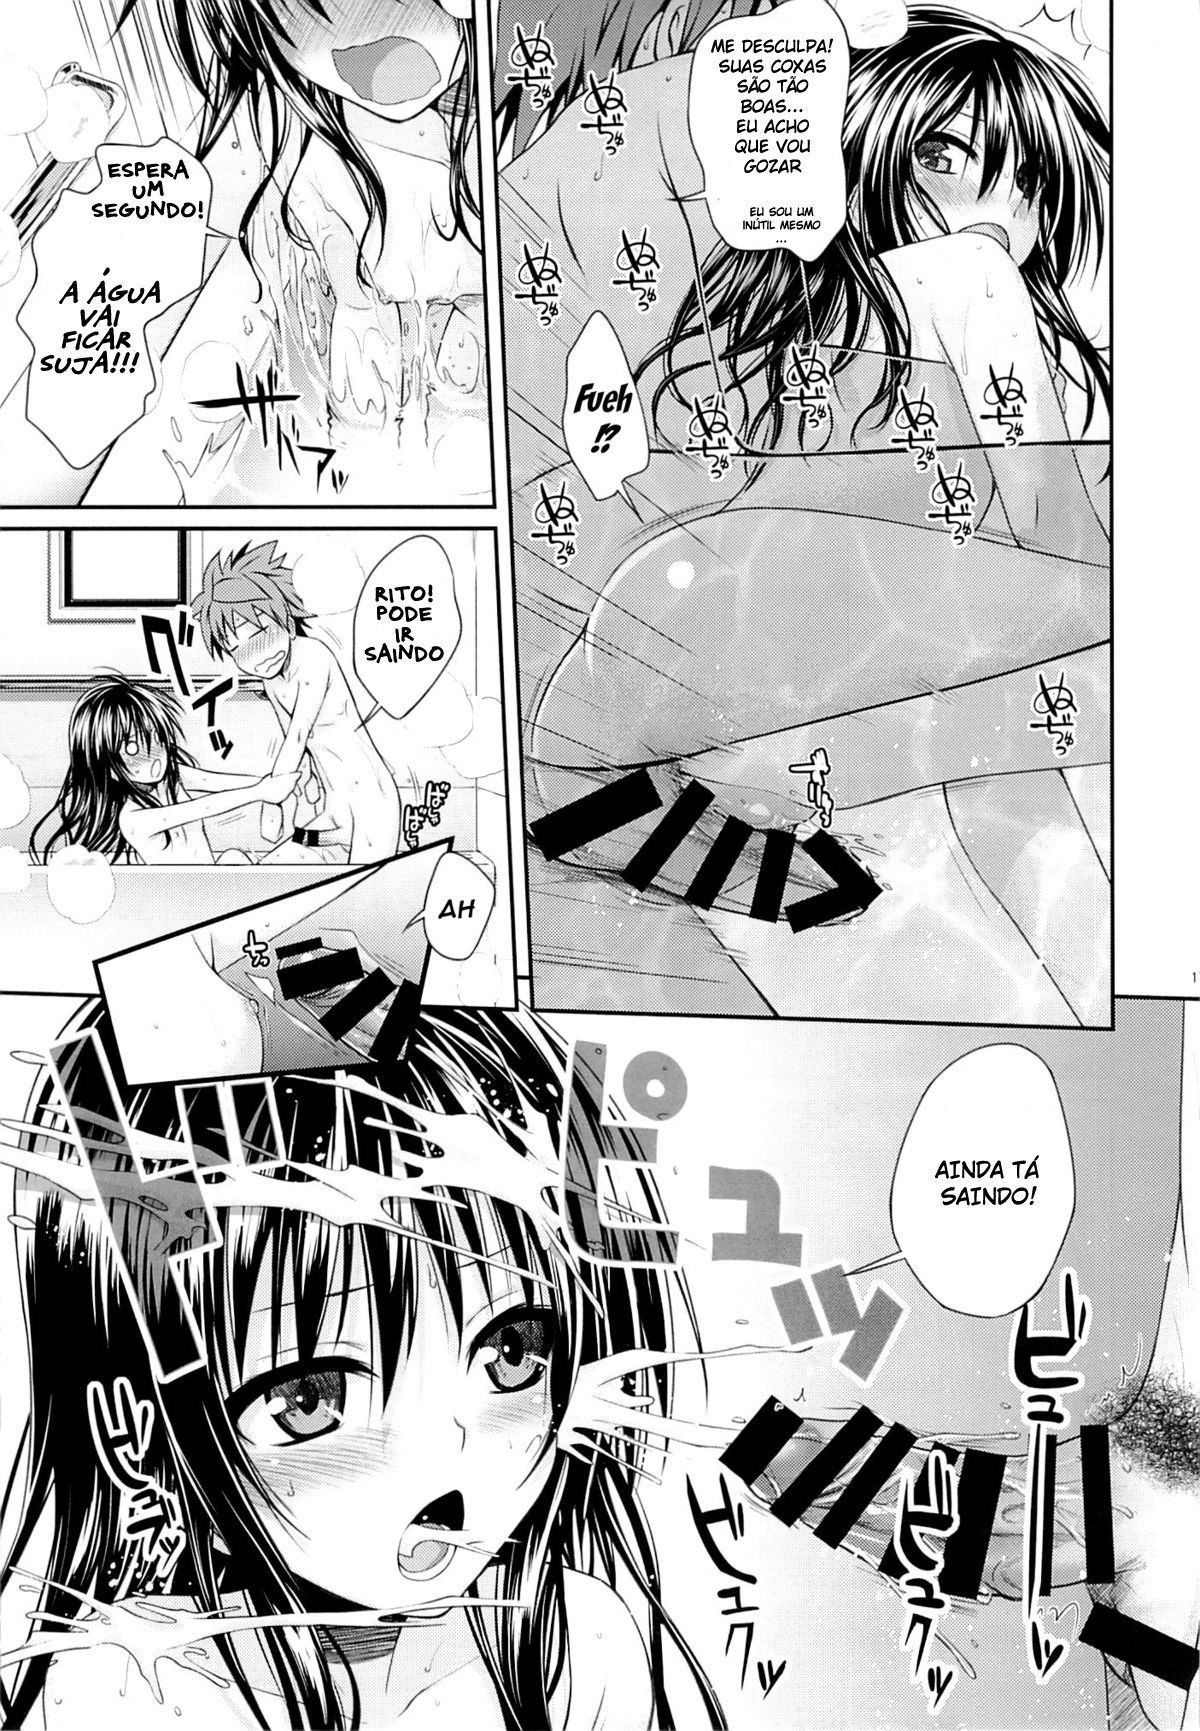 Fodendo a irmãzinha no banho – hentaihome (14)